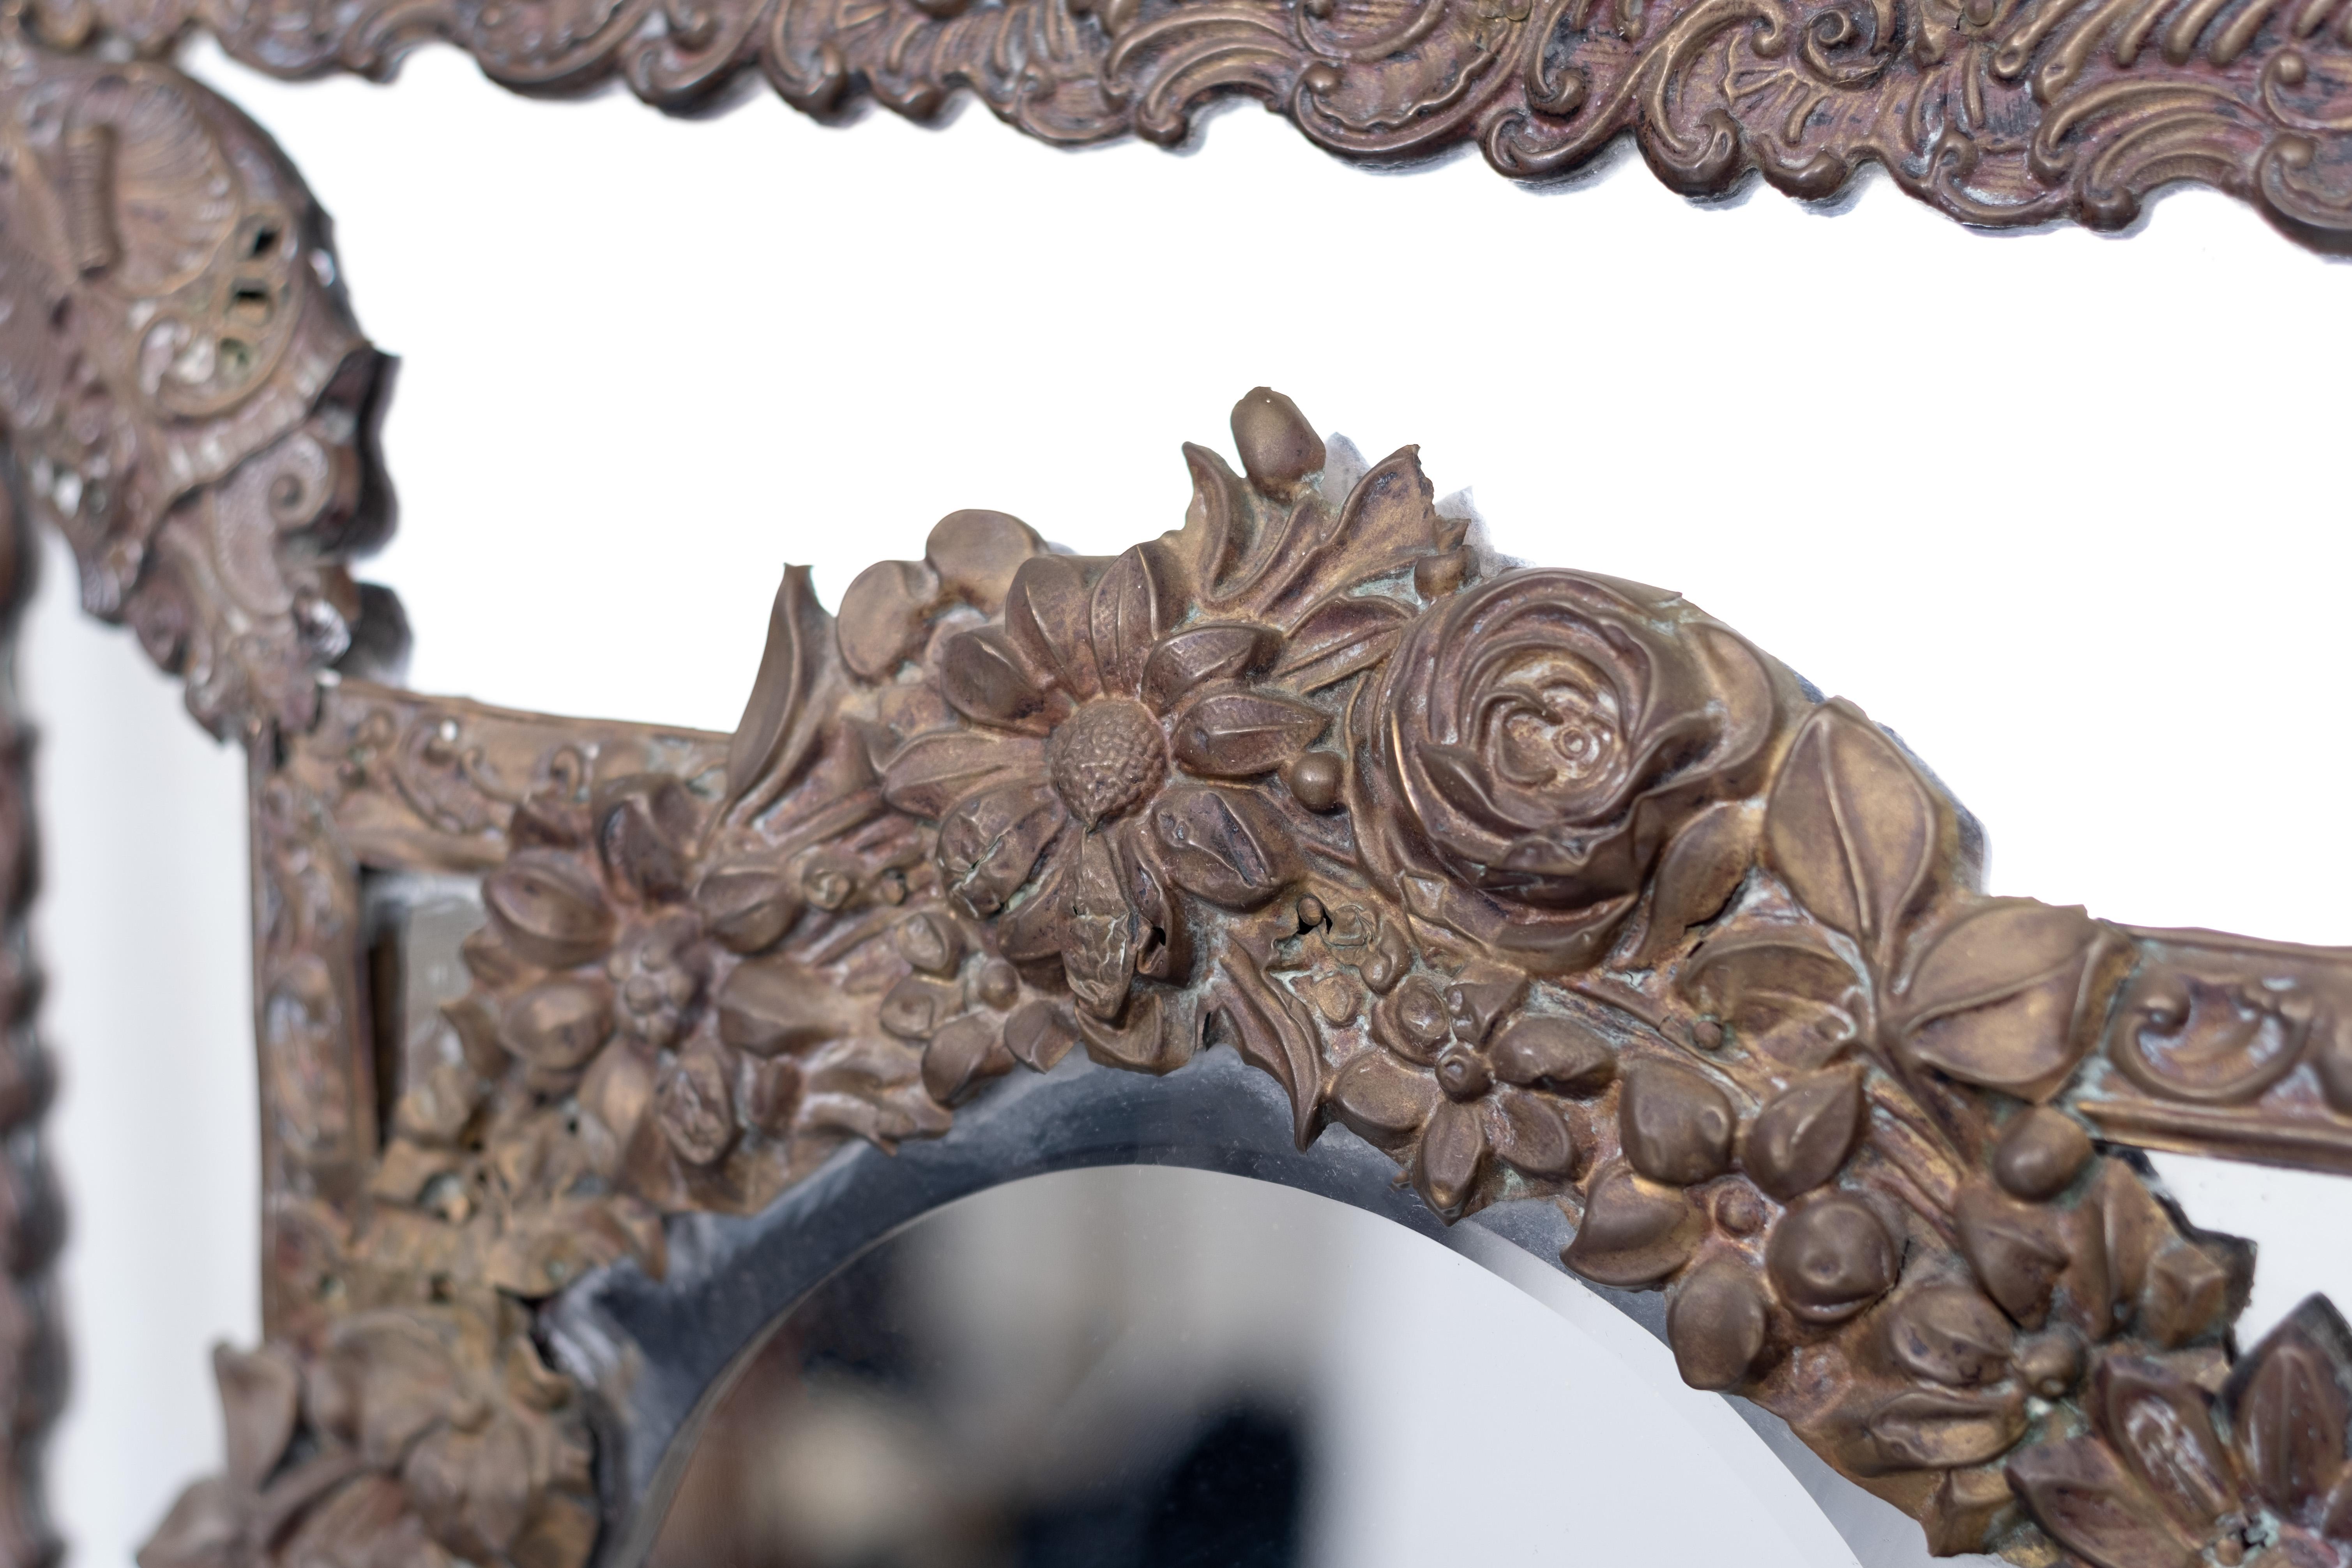 Neunzehnten Jahrhundert niederländischen Kissen Spiegel. Zentrales, abgeschrägtes Glas, flankiert von kleineren Platten, eingefasst in komplizierte, gestanzte Messingarbeiten. Geformtes Wappenbrett aus Messing mit Spiegelrückseite. Einige